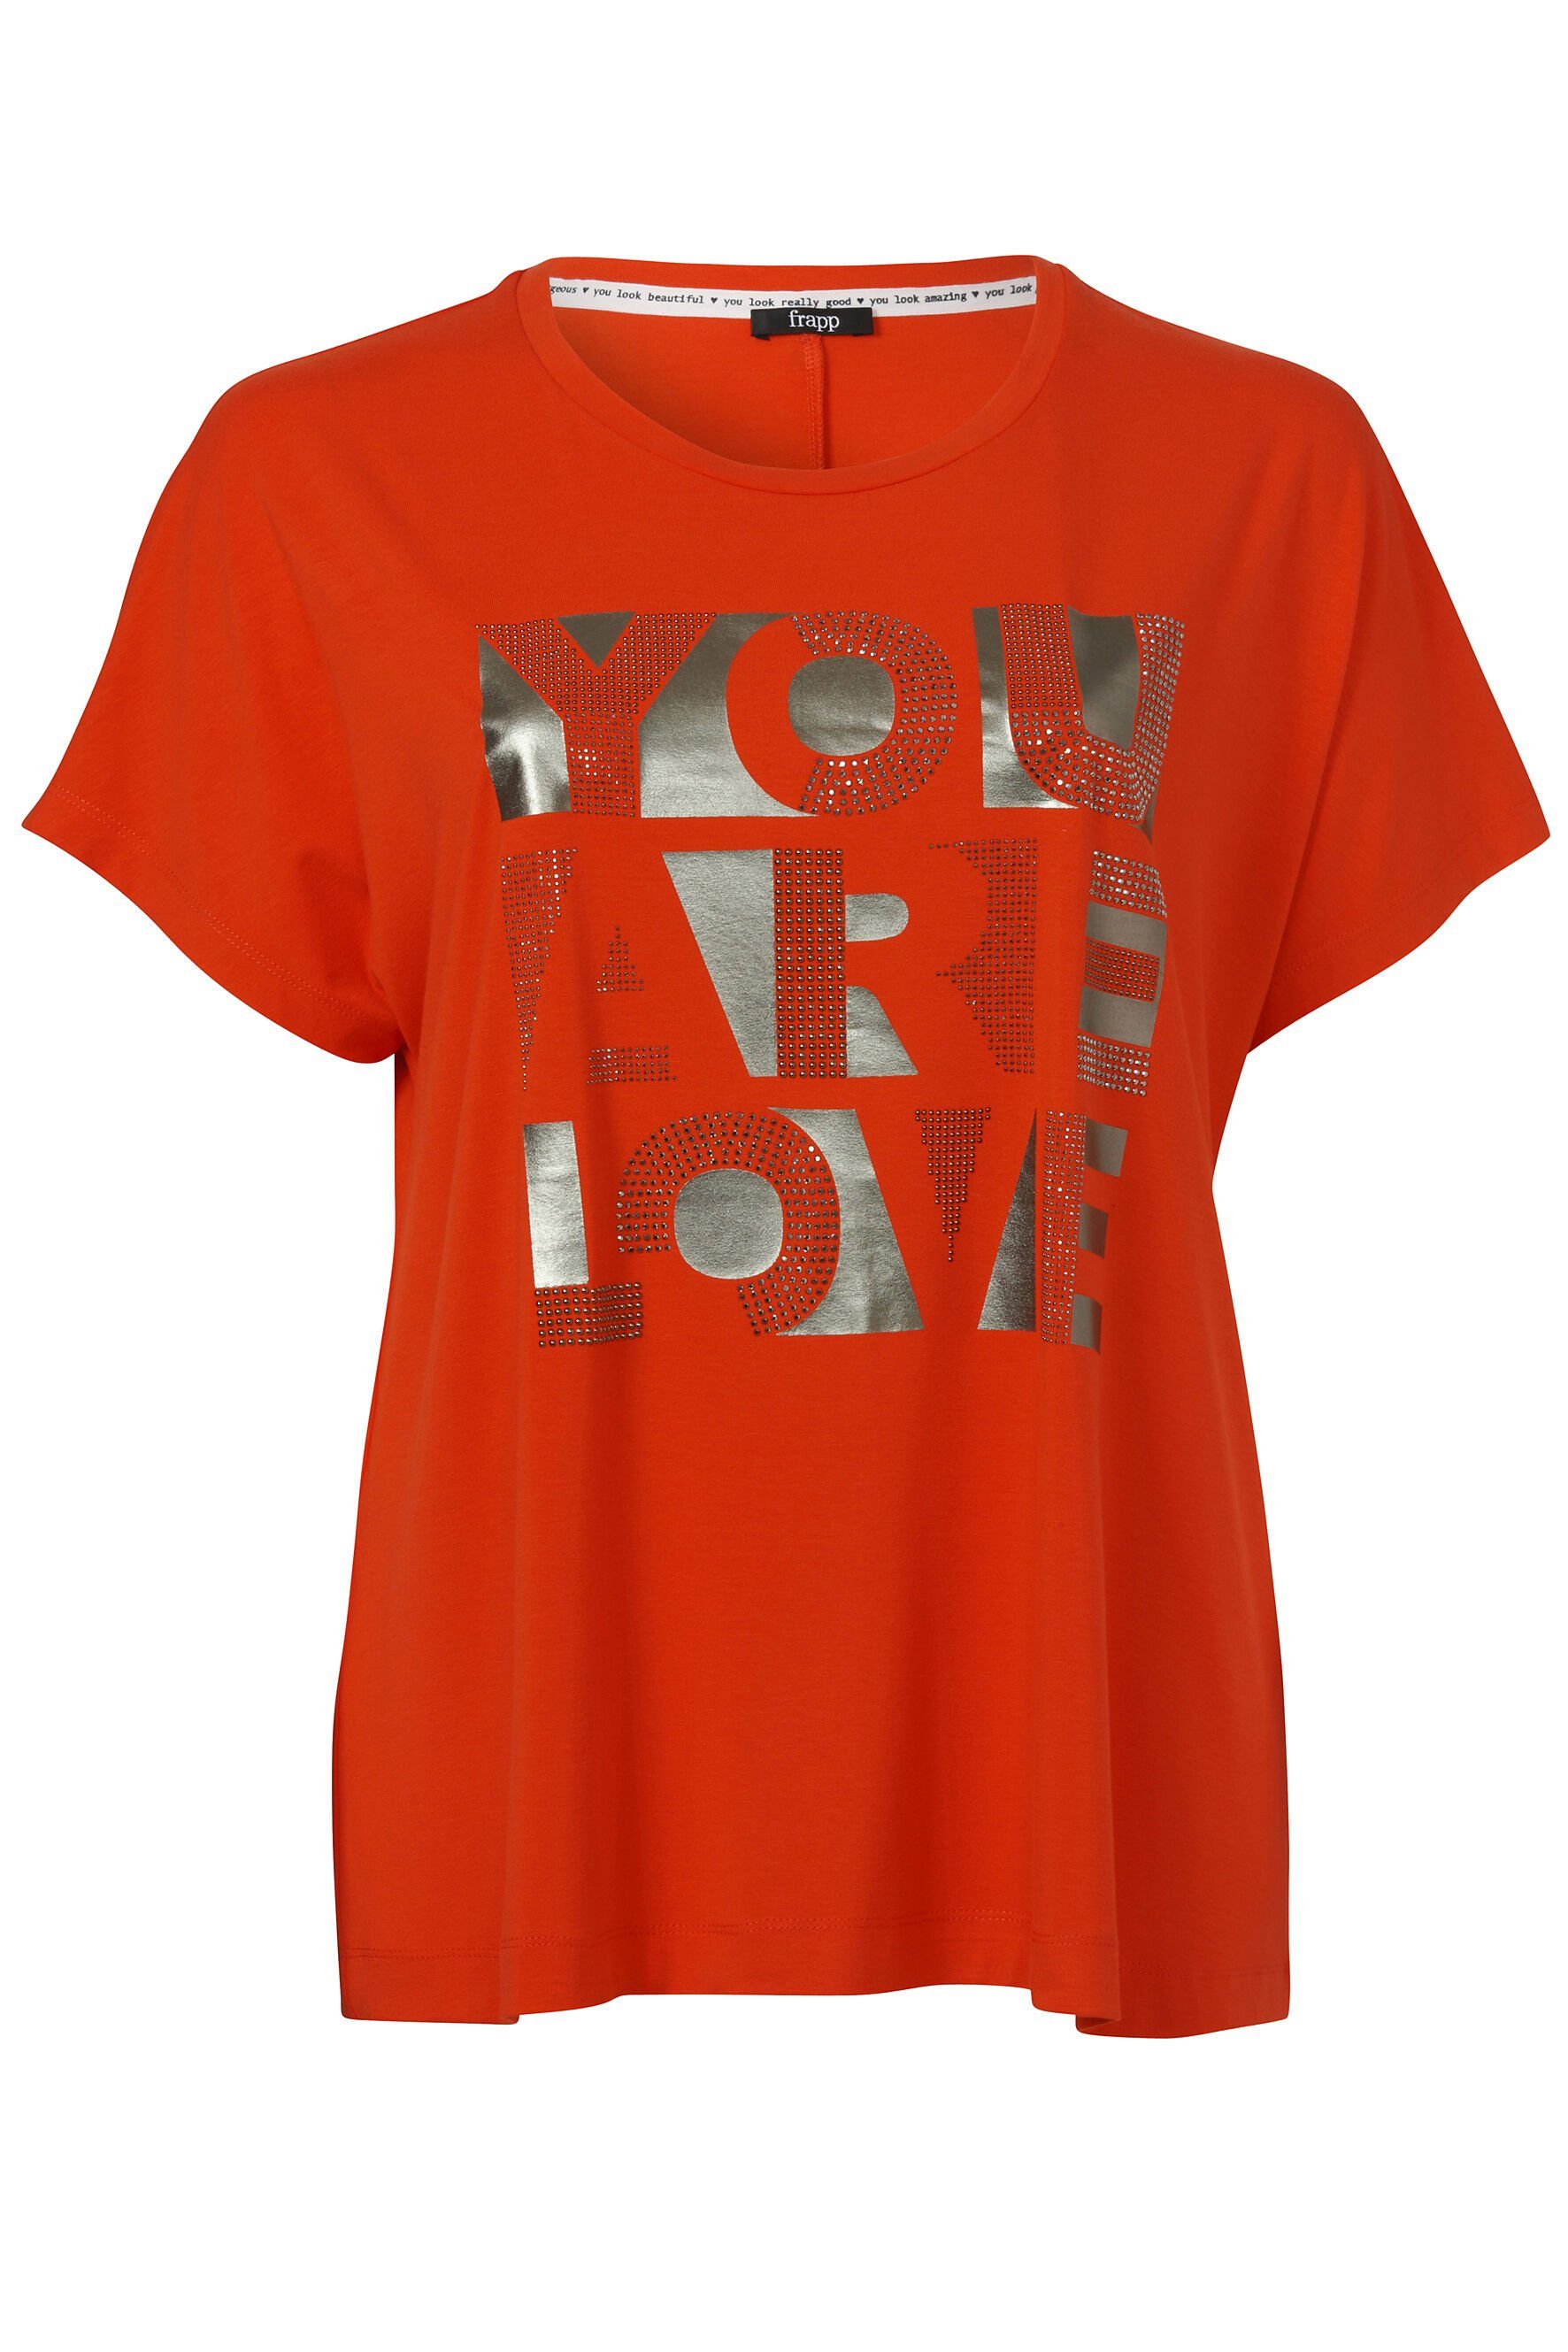 Logo-Applikation orange Glitzersteinen Print-Shirt einer FRAPP dark und